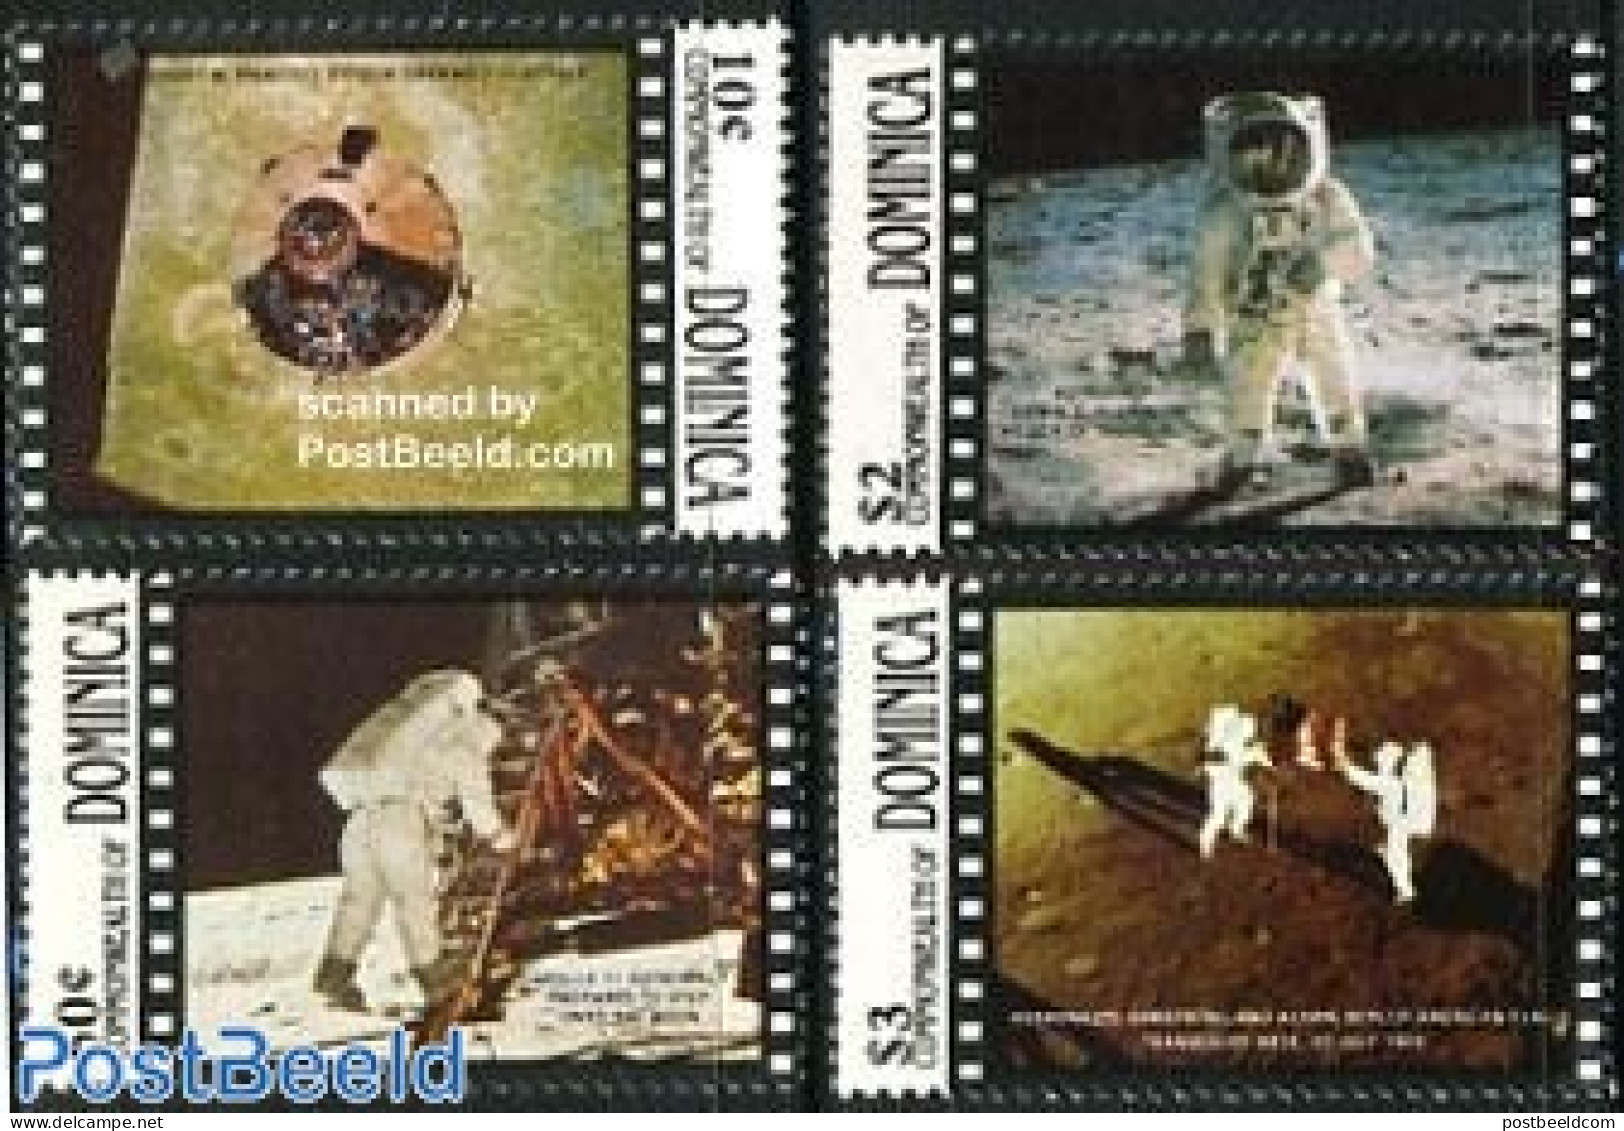 Dominica 1989 Moonlanding 4v, Mint NH, Transport - Space Exploration - Repubblica Domenicana